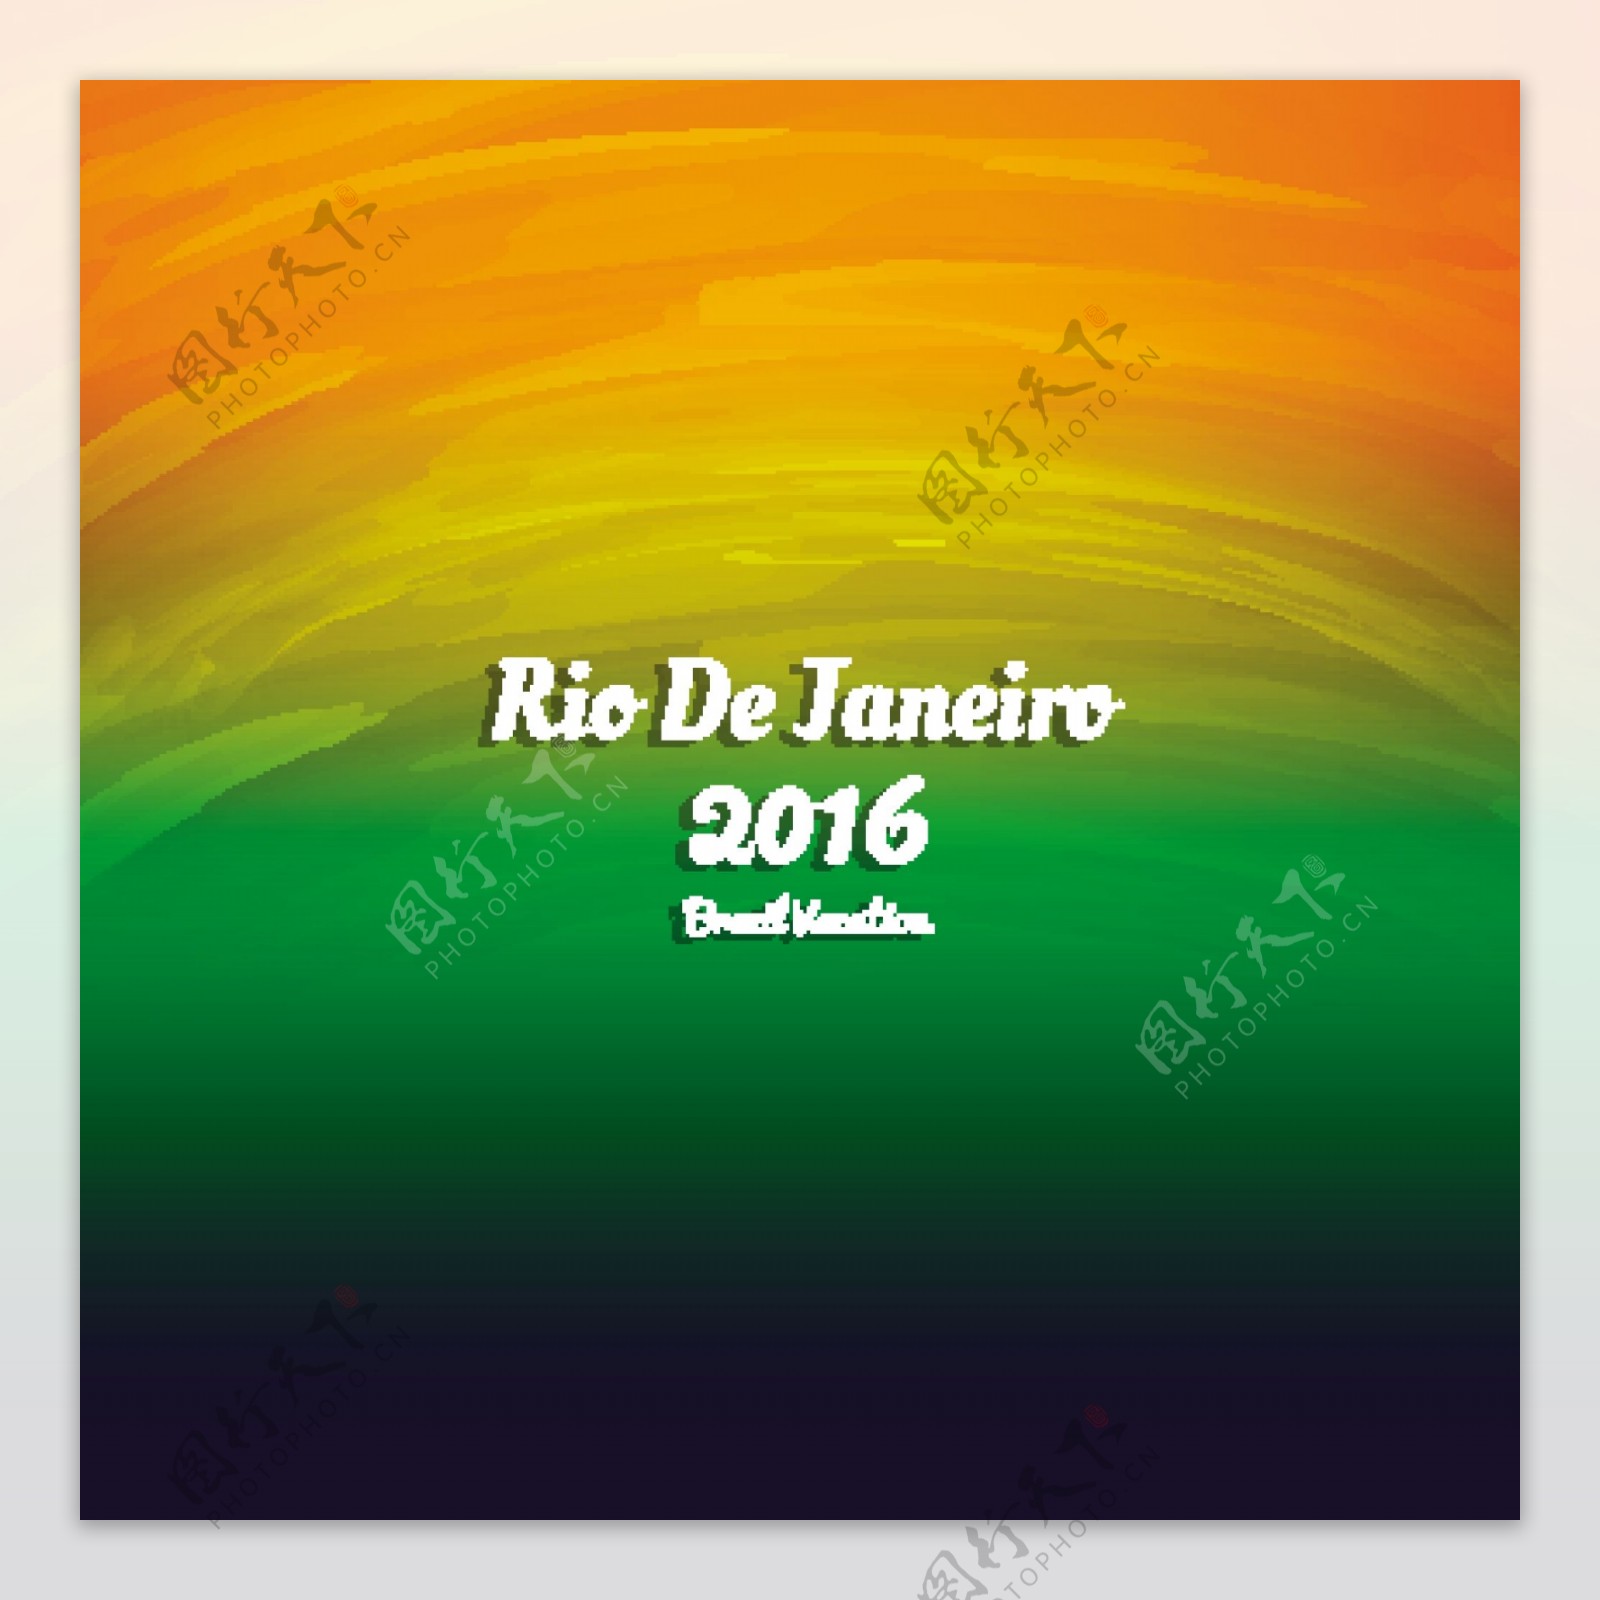 水彩里约热内卢2016大背景